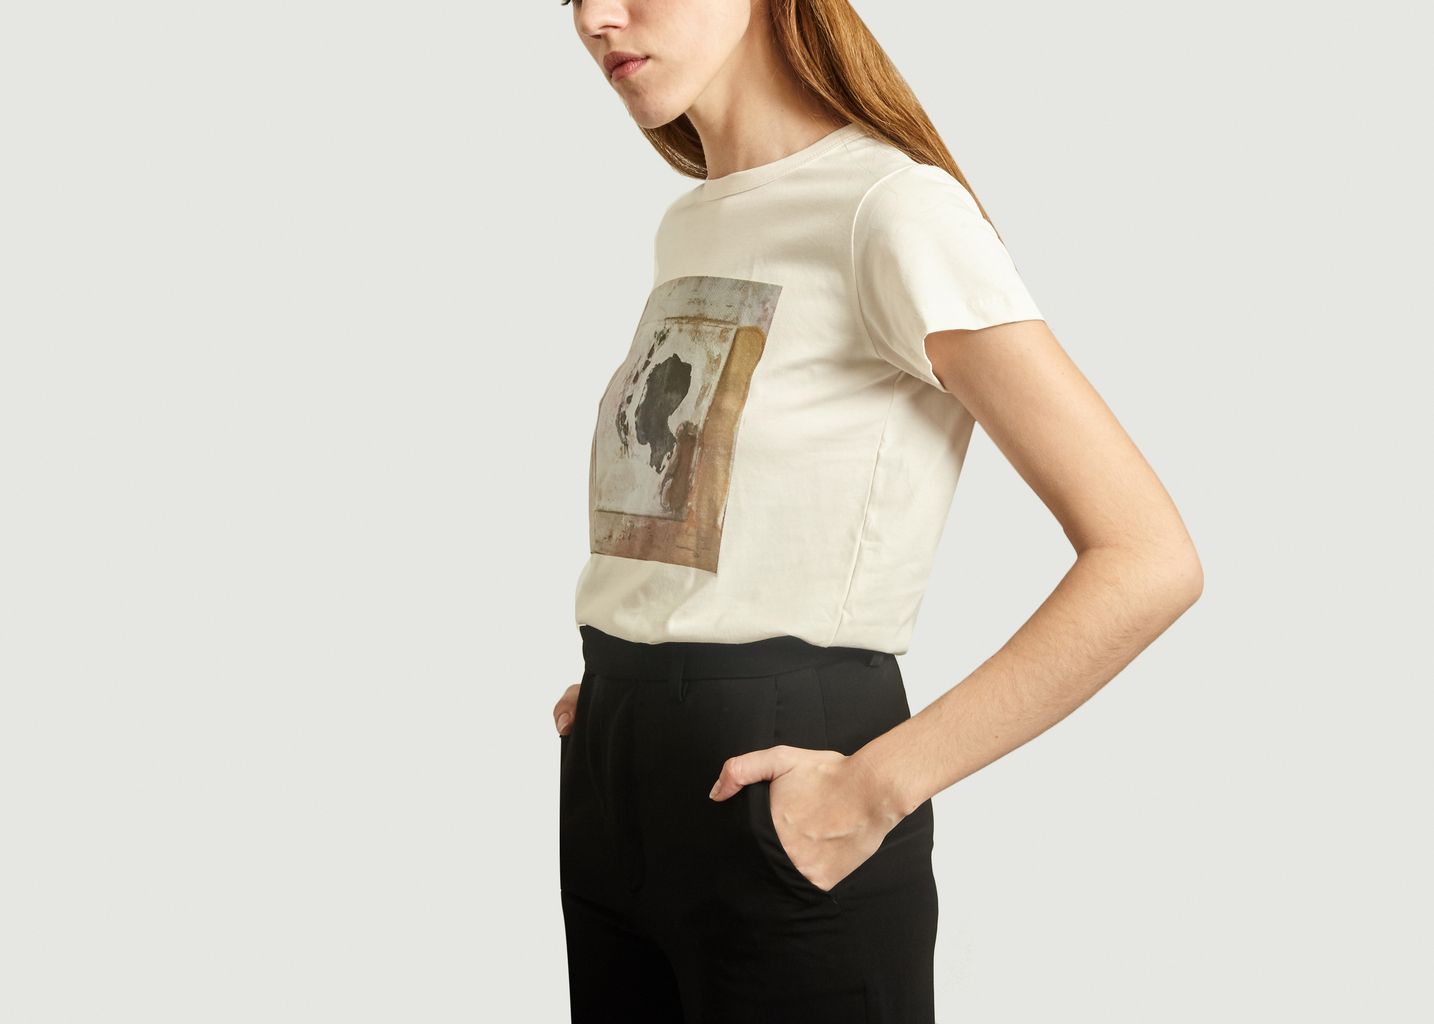 Brando T-Shirt By Loulou Picasso - agnès b.